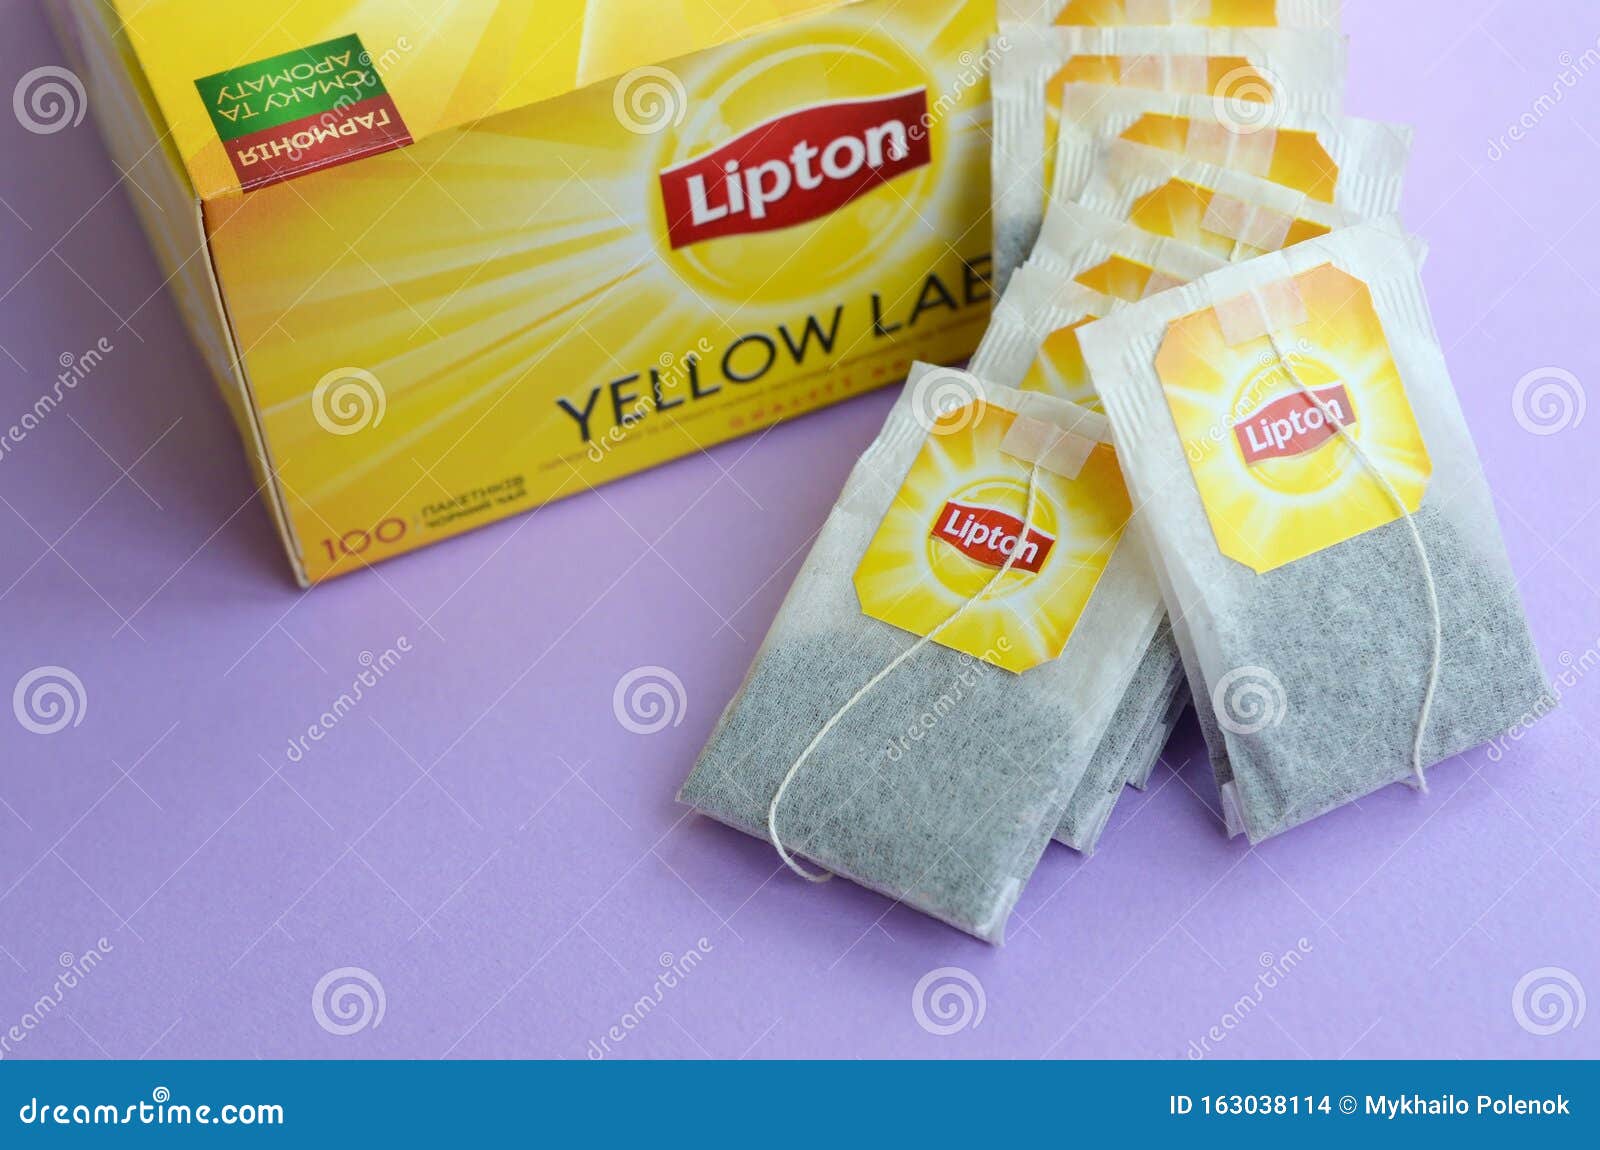 Lipton Spiced Chai Black Tea Bags - 28/Box